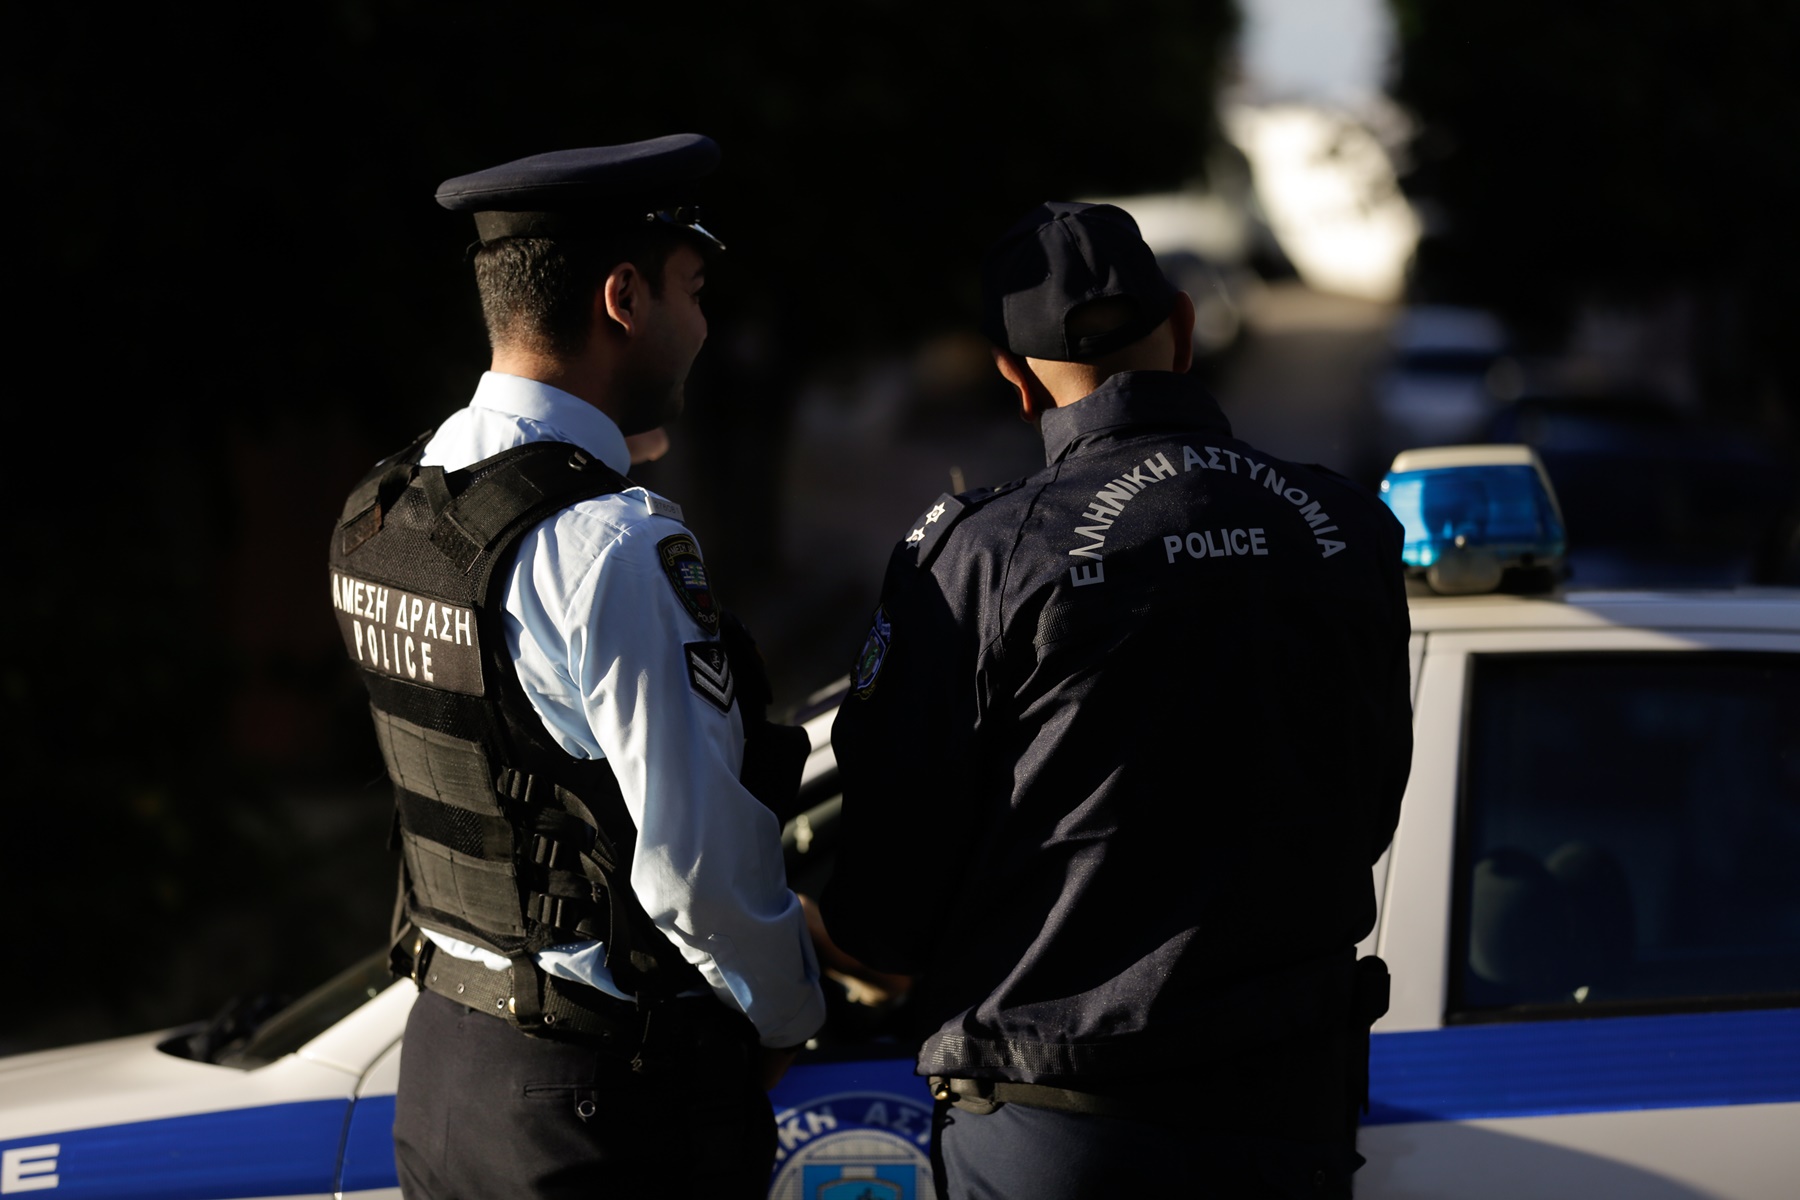 Ανάβυσσος – μαϊμού αστυνομικοί: Μπήκαν σπίτι για “έλεγχο” και πήραν χιλιάδες ευρώ